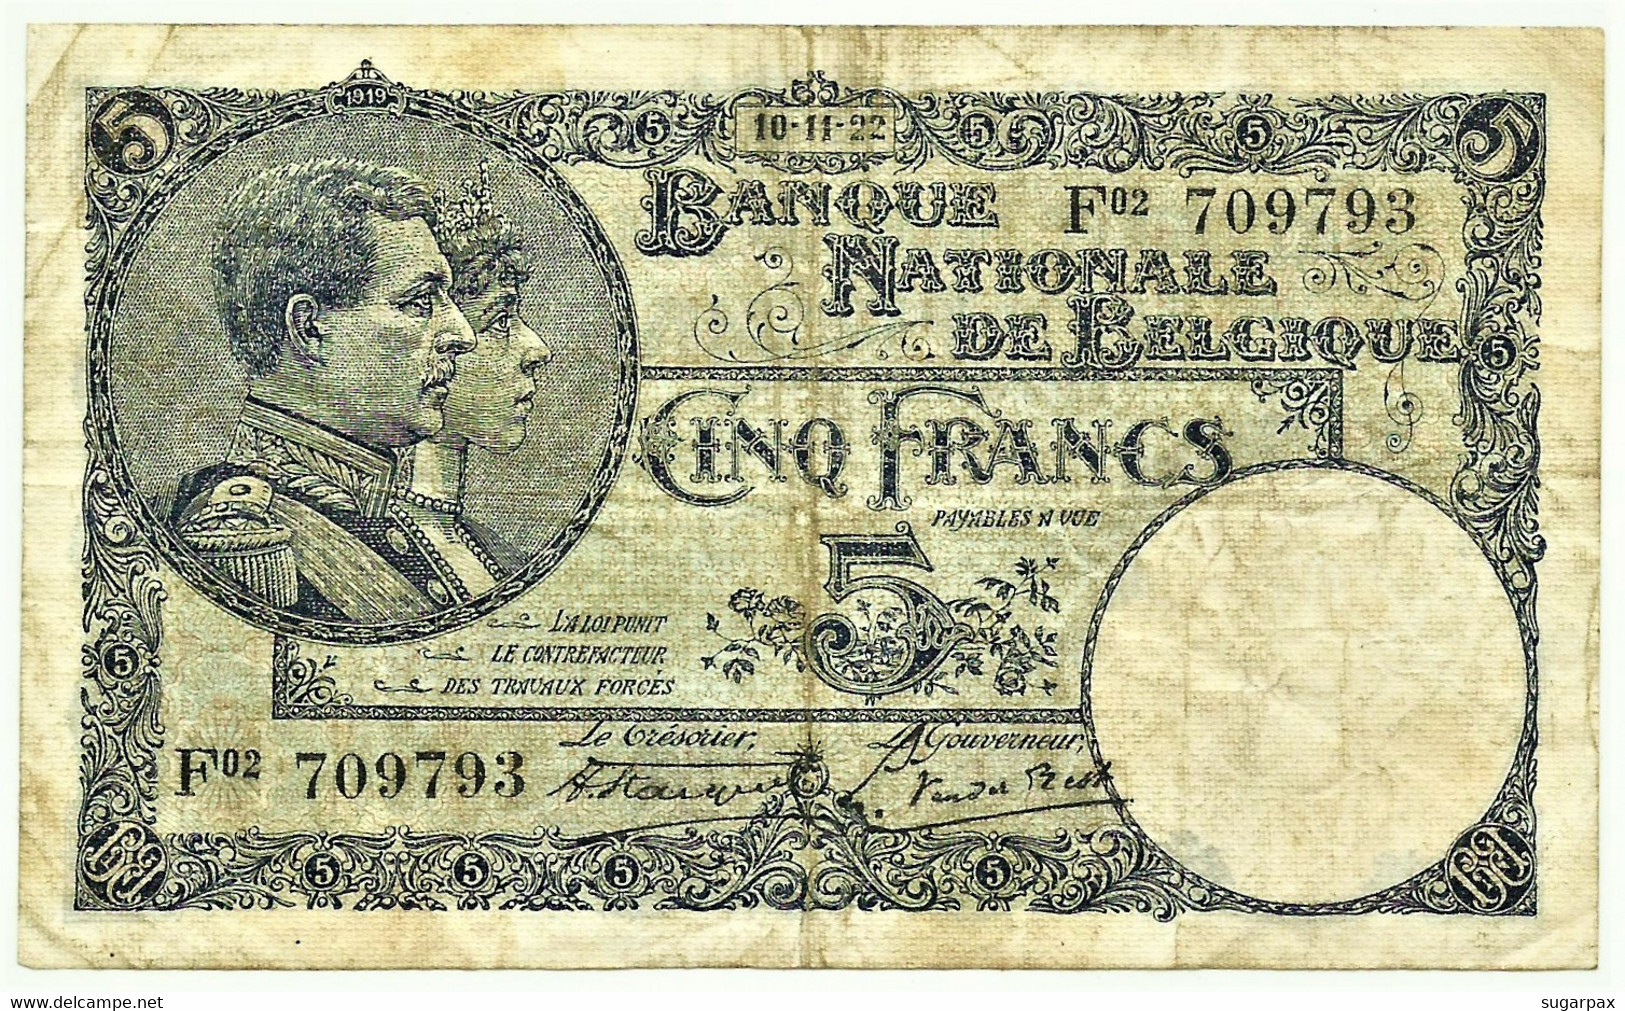 Belgium - 5 Francs - 10.11.1922 - Pick 93 - Serie F 02 - King Albert & Queen Elizabeth - Belgie Belgique - 5 Franchi